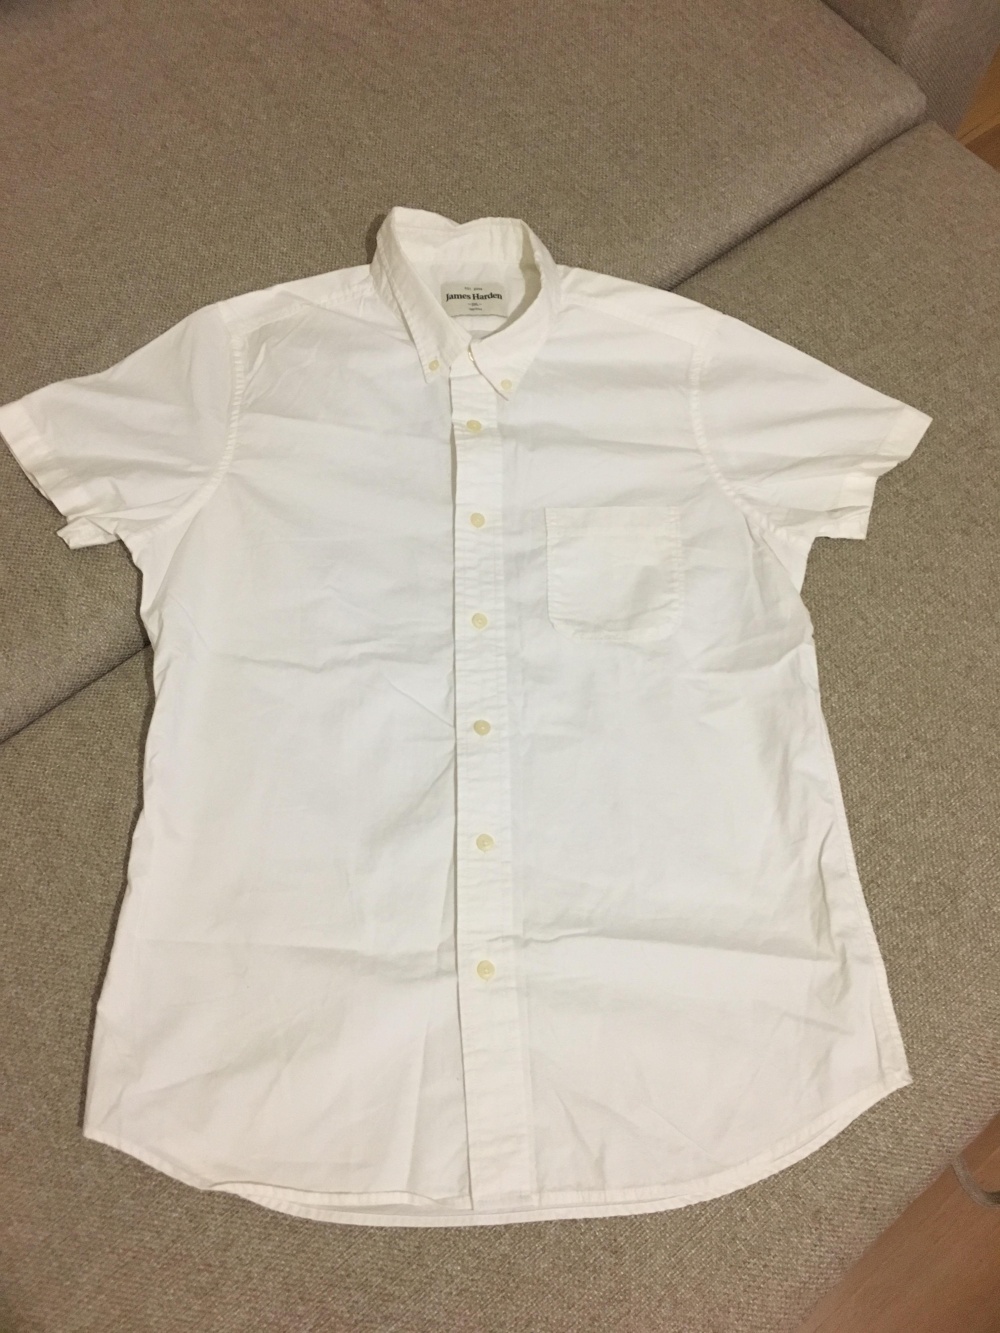 Мужская белая рубашка JamesHarden, XL